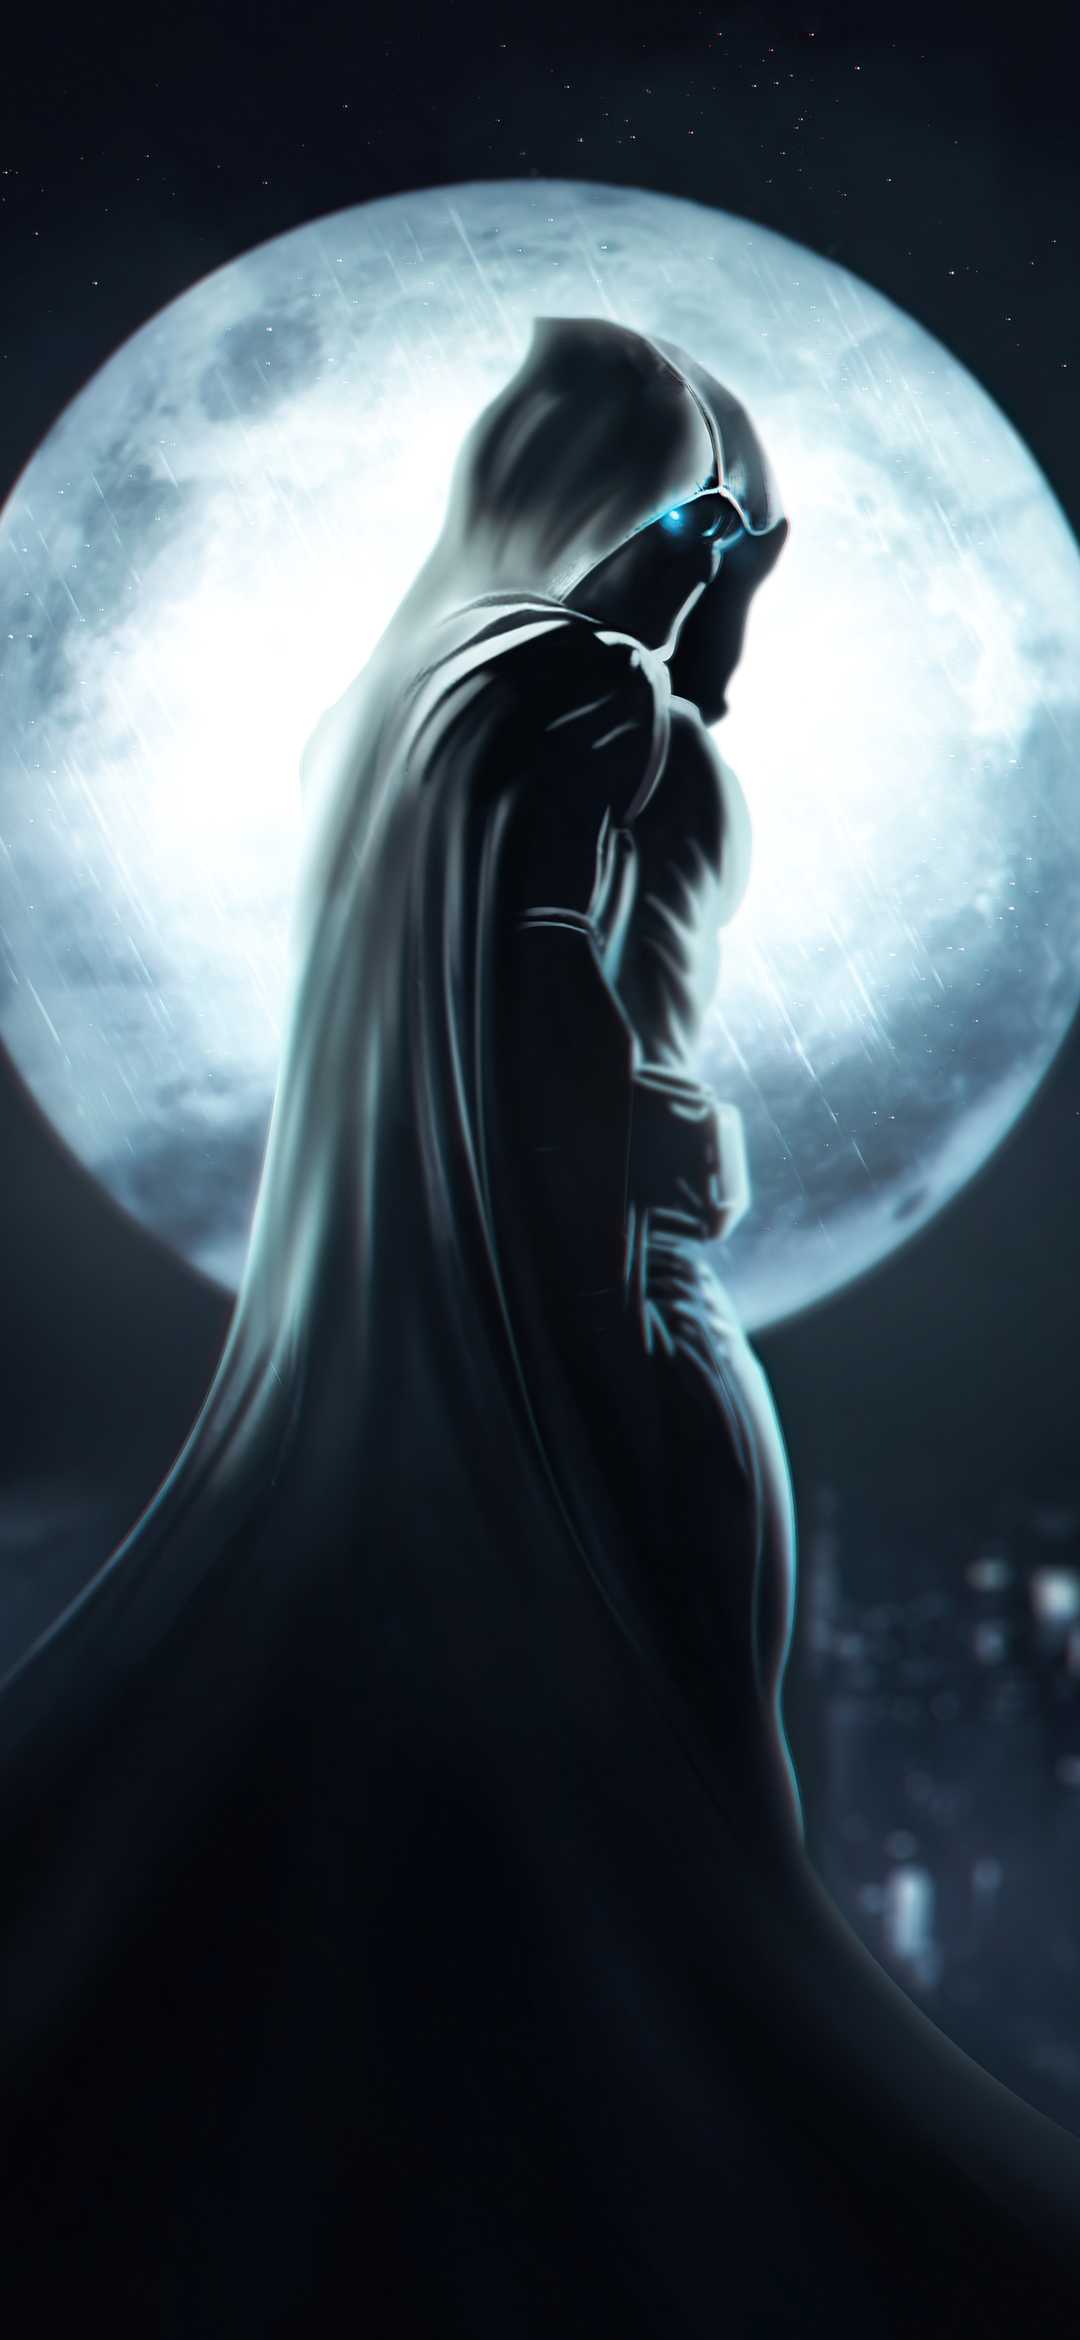 Moon Knight Marvel Superhero 8K Wallpaper #6.1236